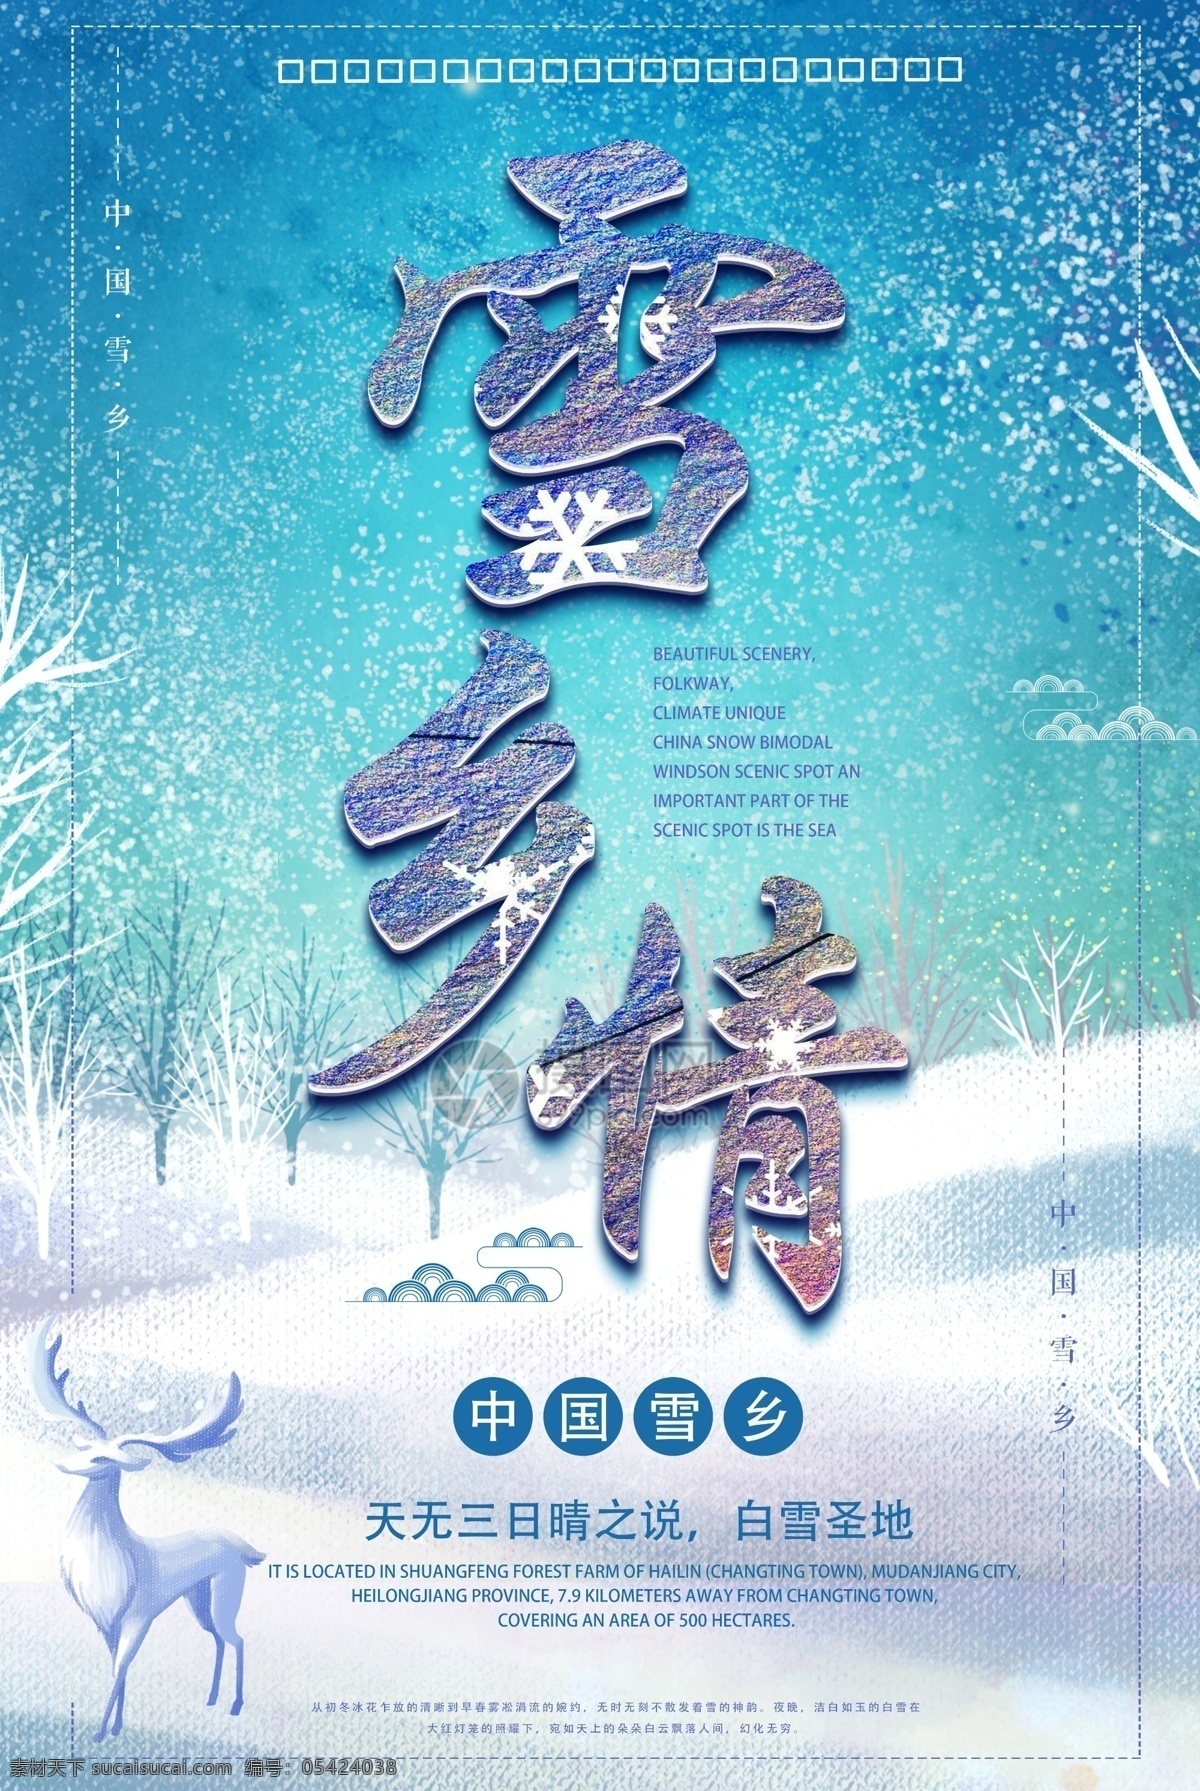 中国 雪乡 旅游 海报 冷色调 雪花 浪漫 森林 里 小鹿 月光 插画 意境 小清新 大雪 唯美